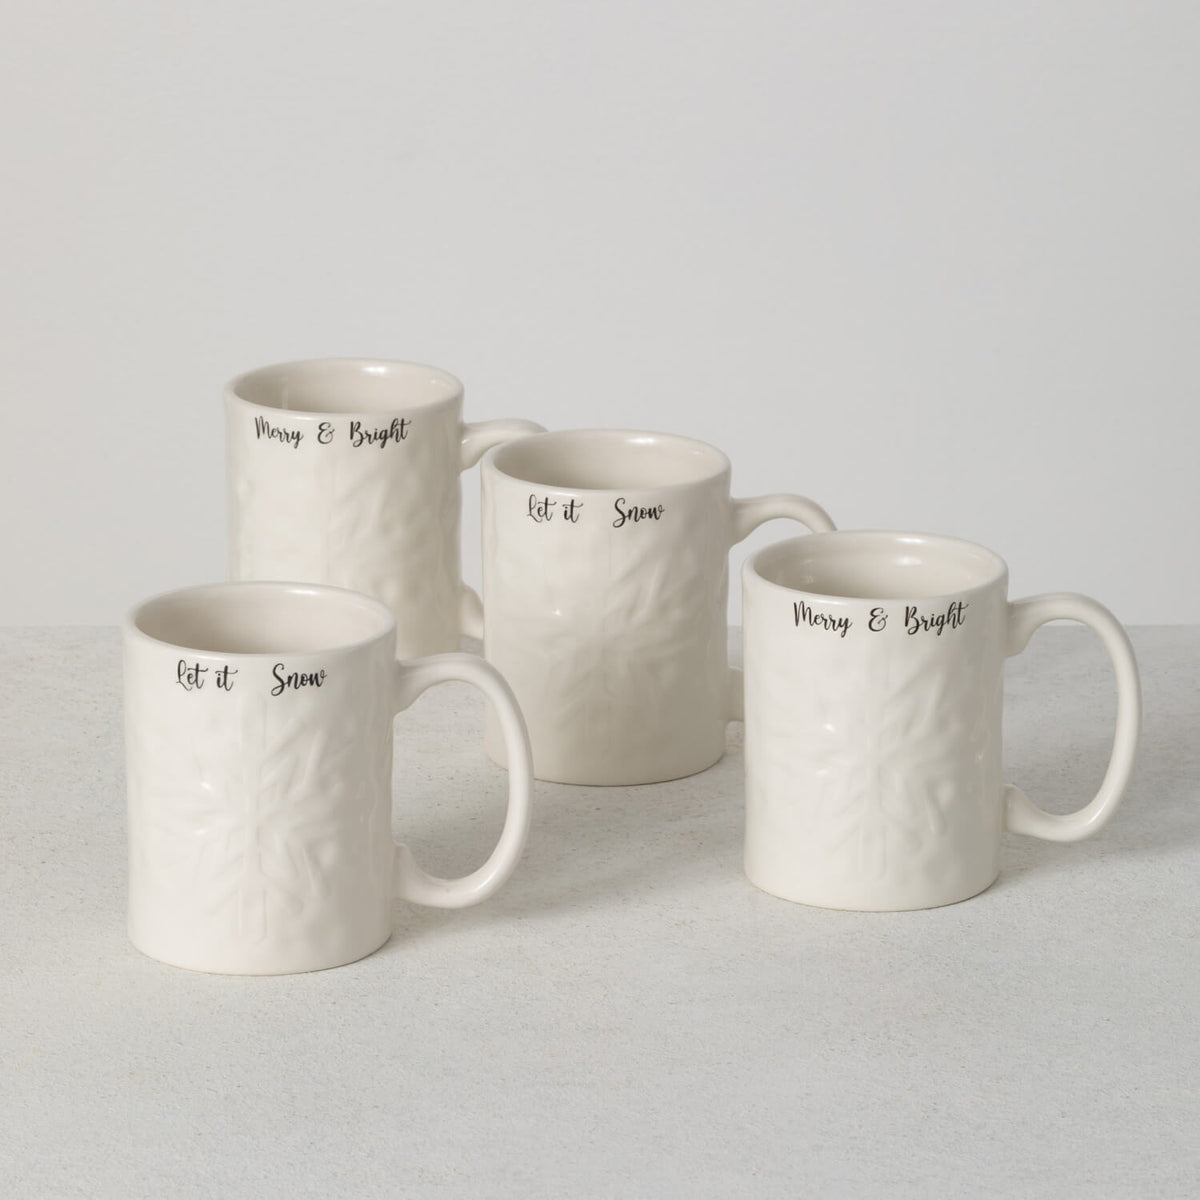 Split P Golden Christmas Mug Set - White